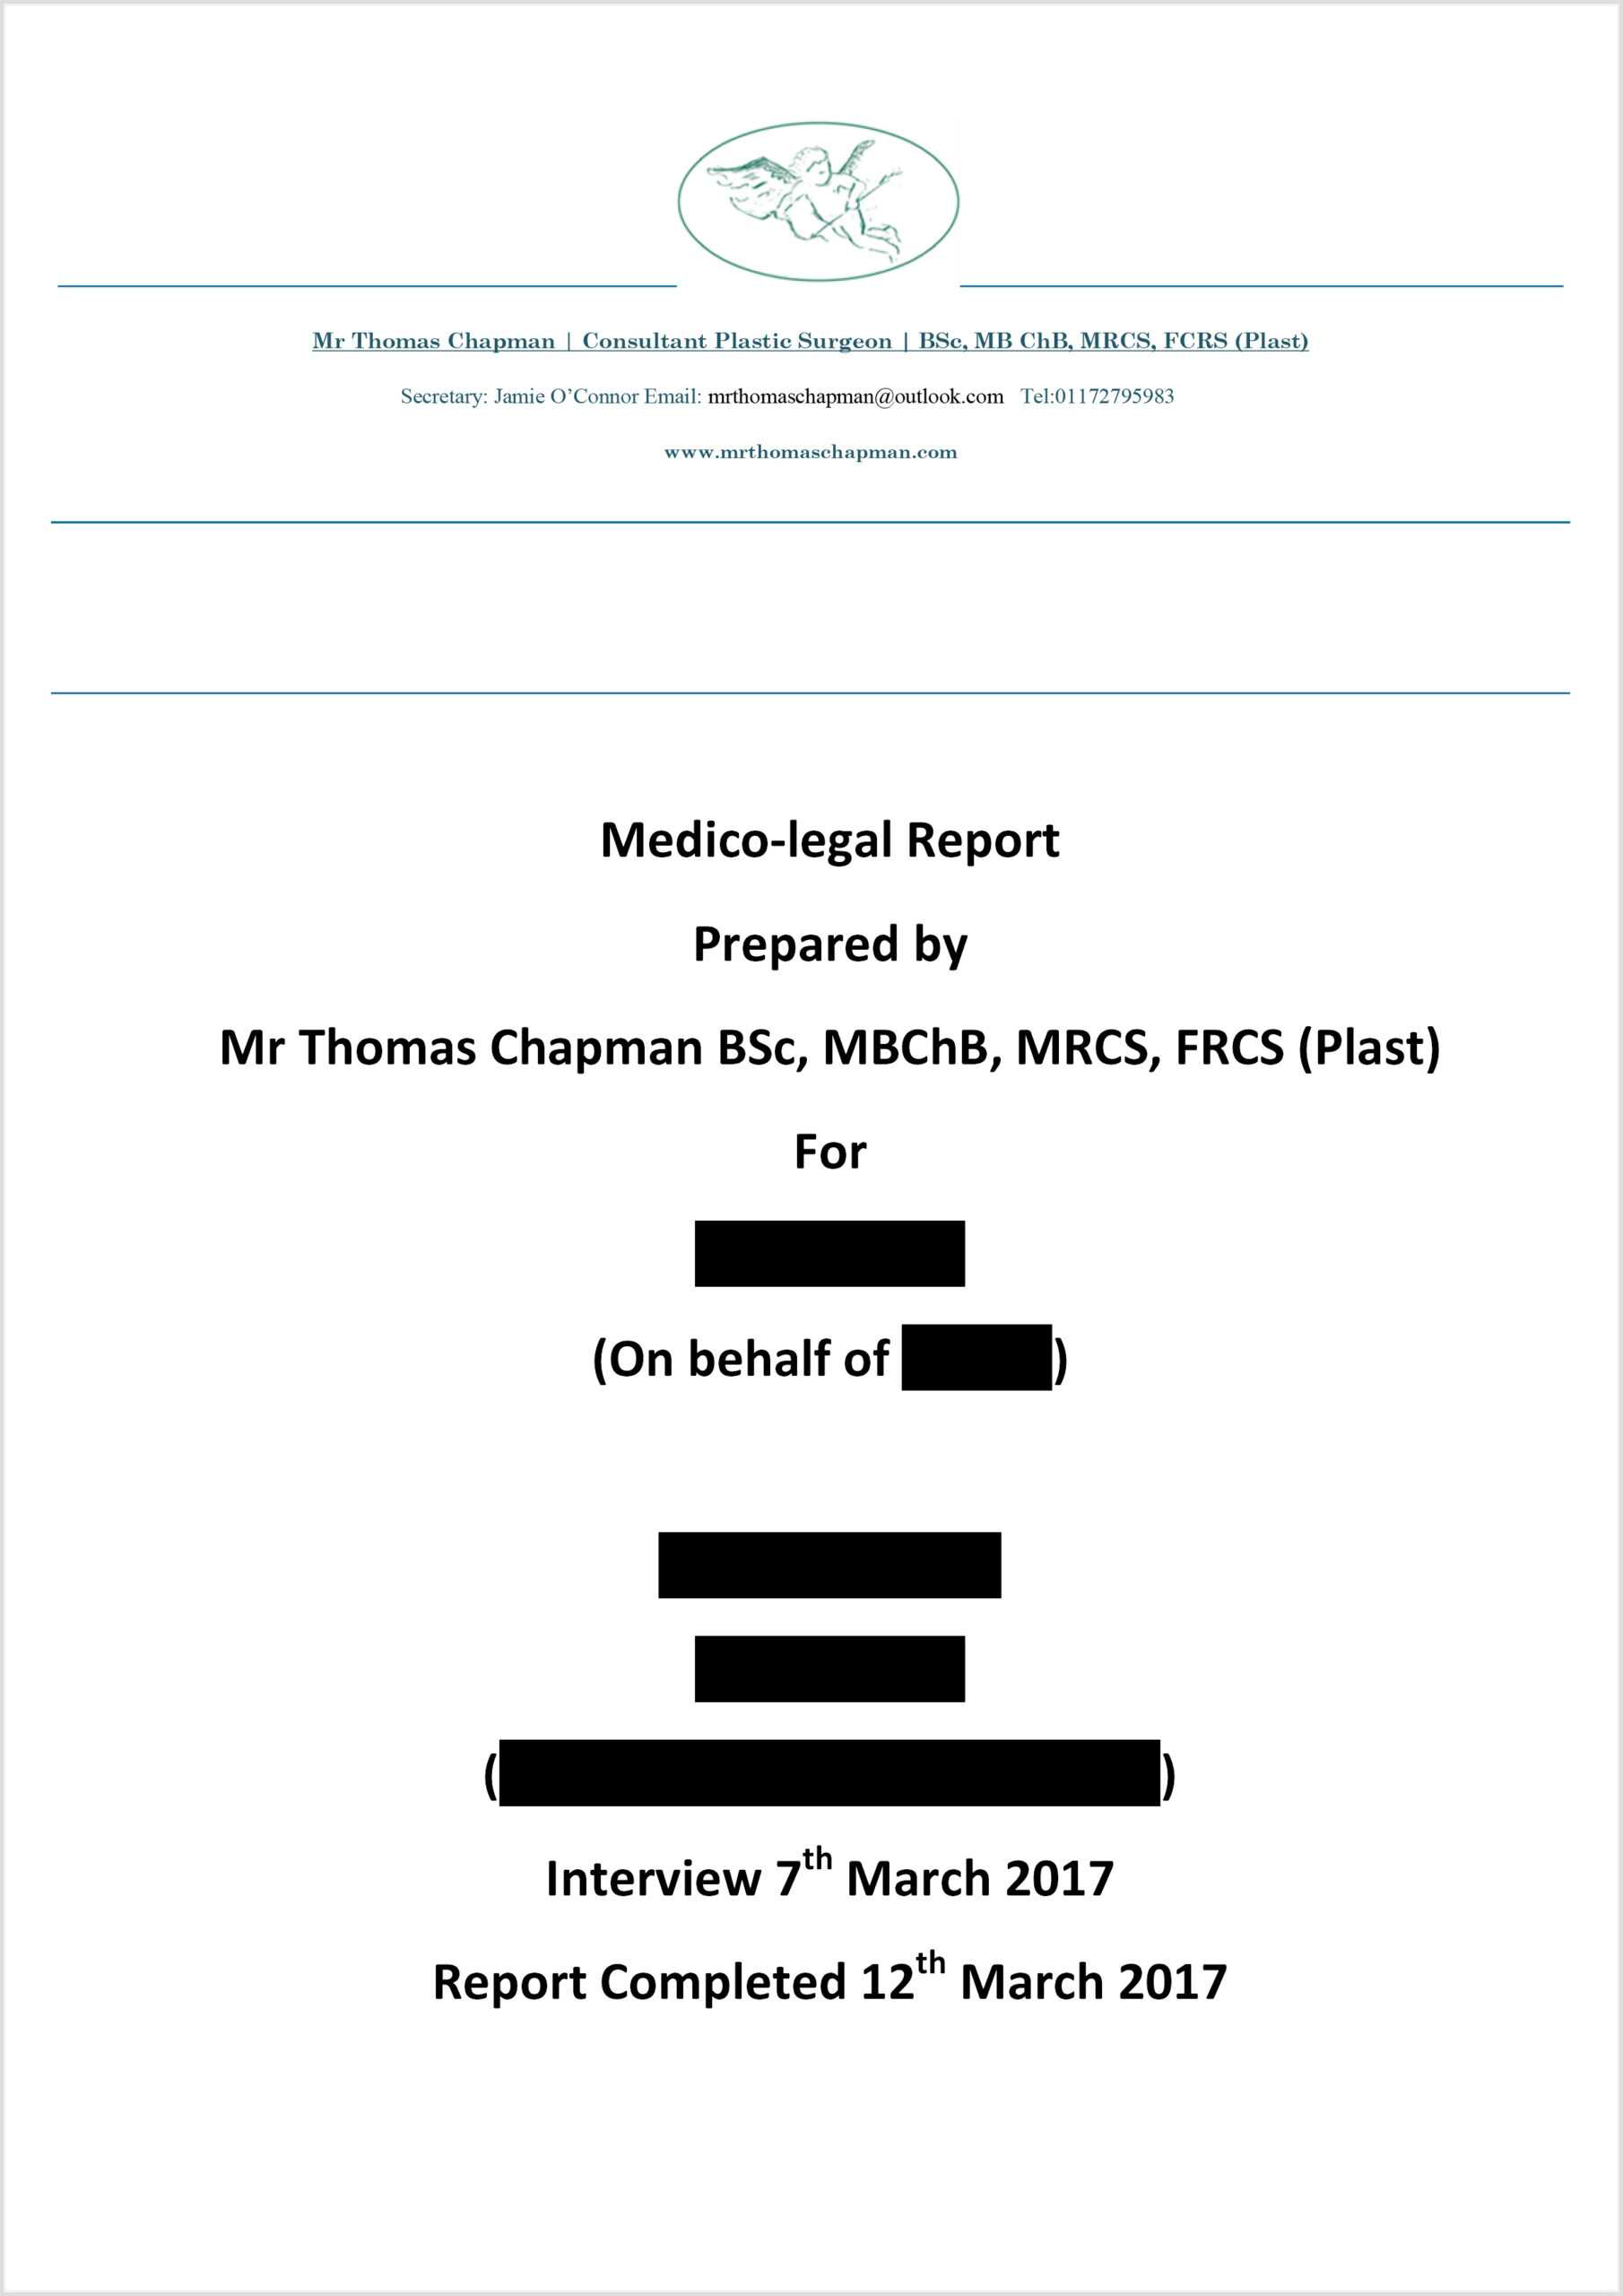 Medicolegal Reporting - Mr Thomas Chapman With Medical Legal Report Template